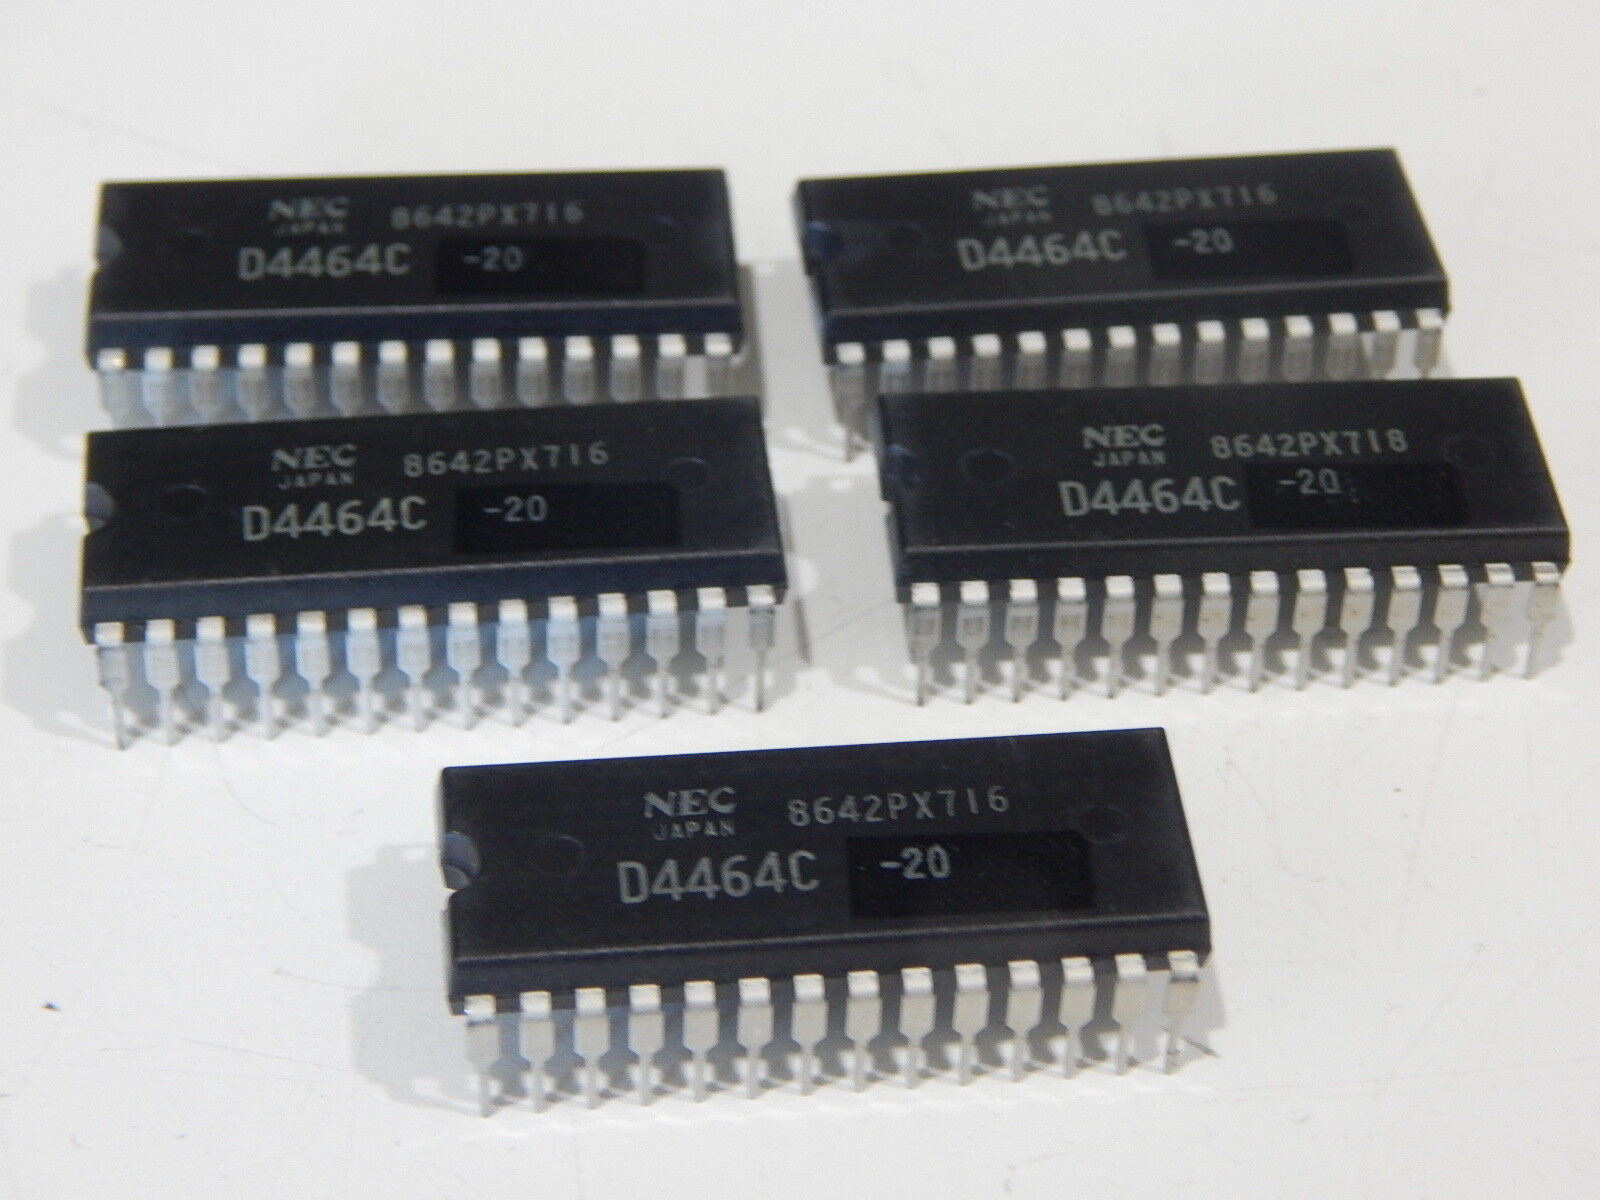 NEC D4464C D4464C-20 UPD4464 8192 X 8 BI CMOS STATIC RAM DIP - YOU GET 5 PIECES